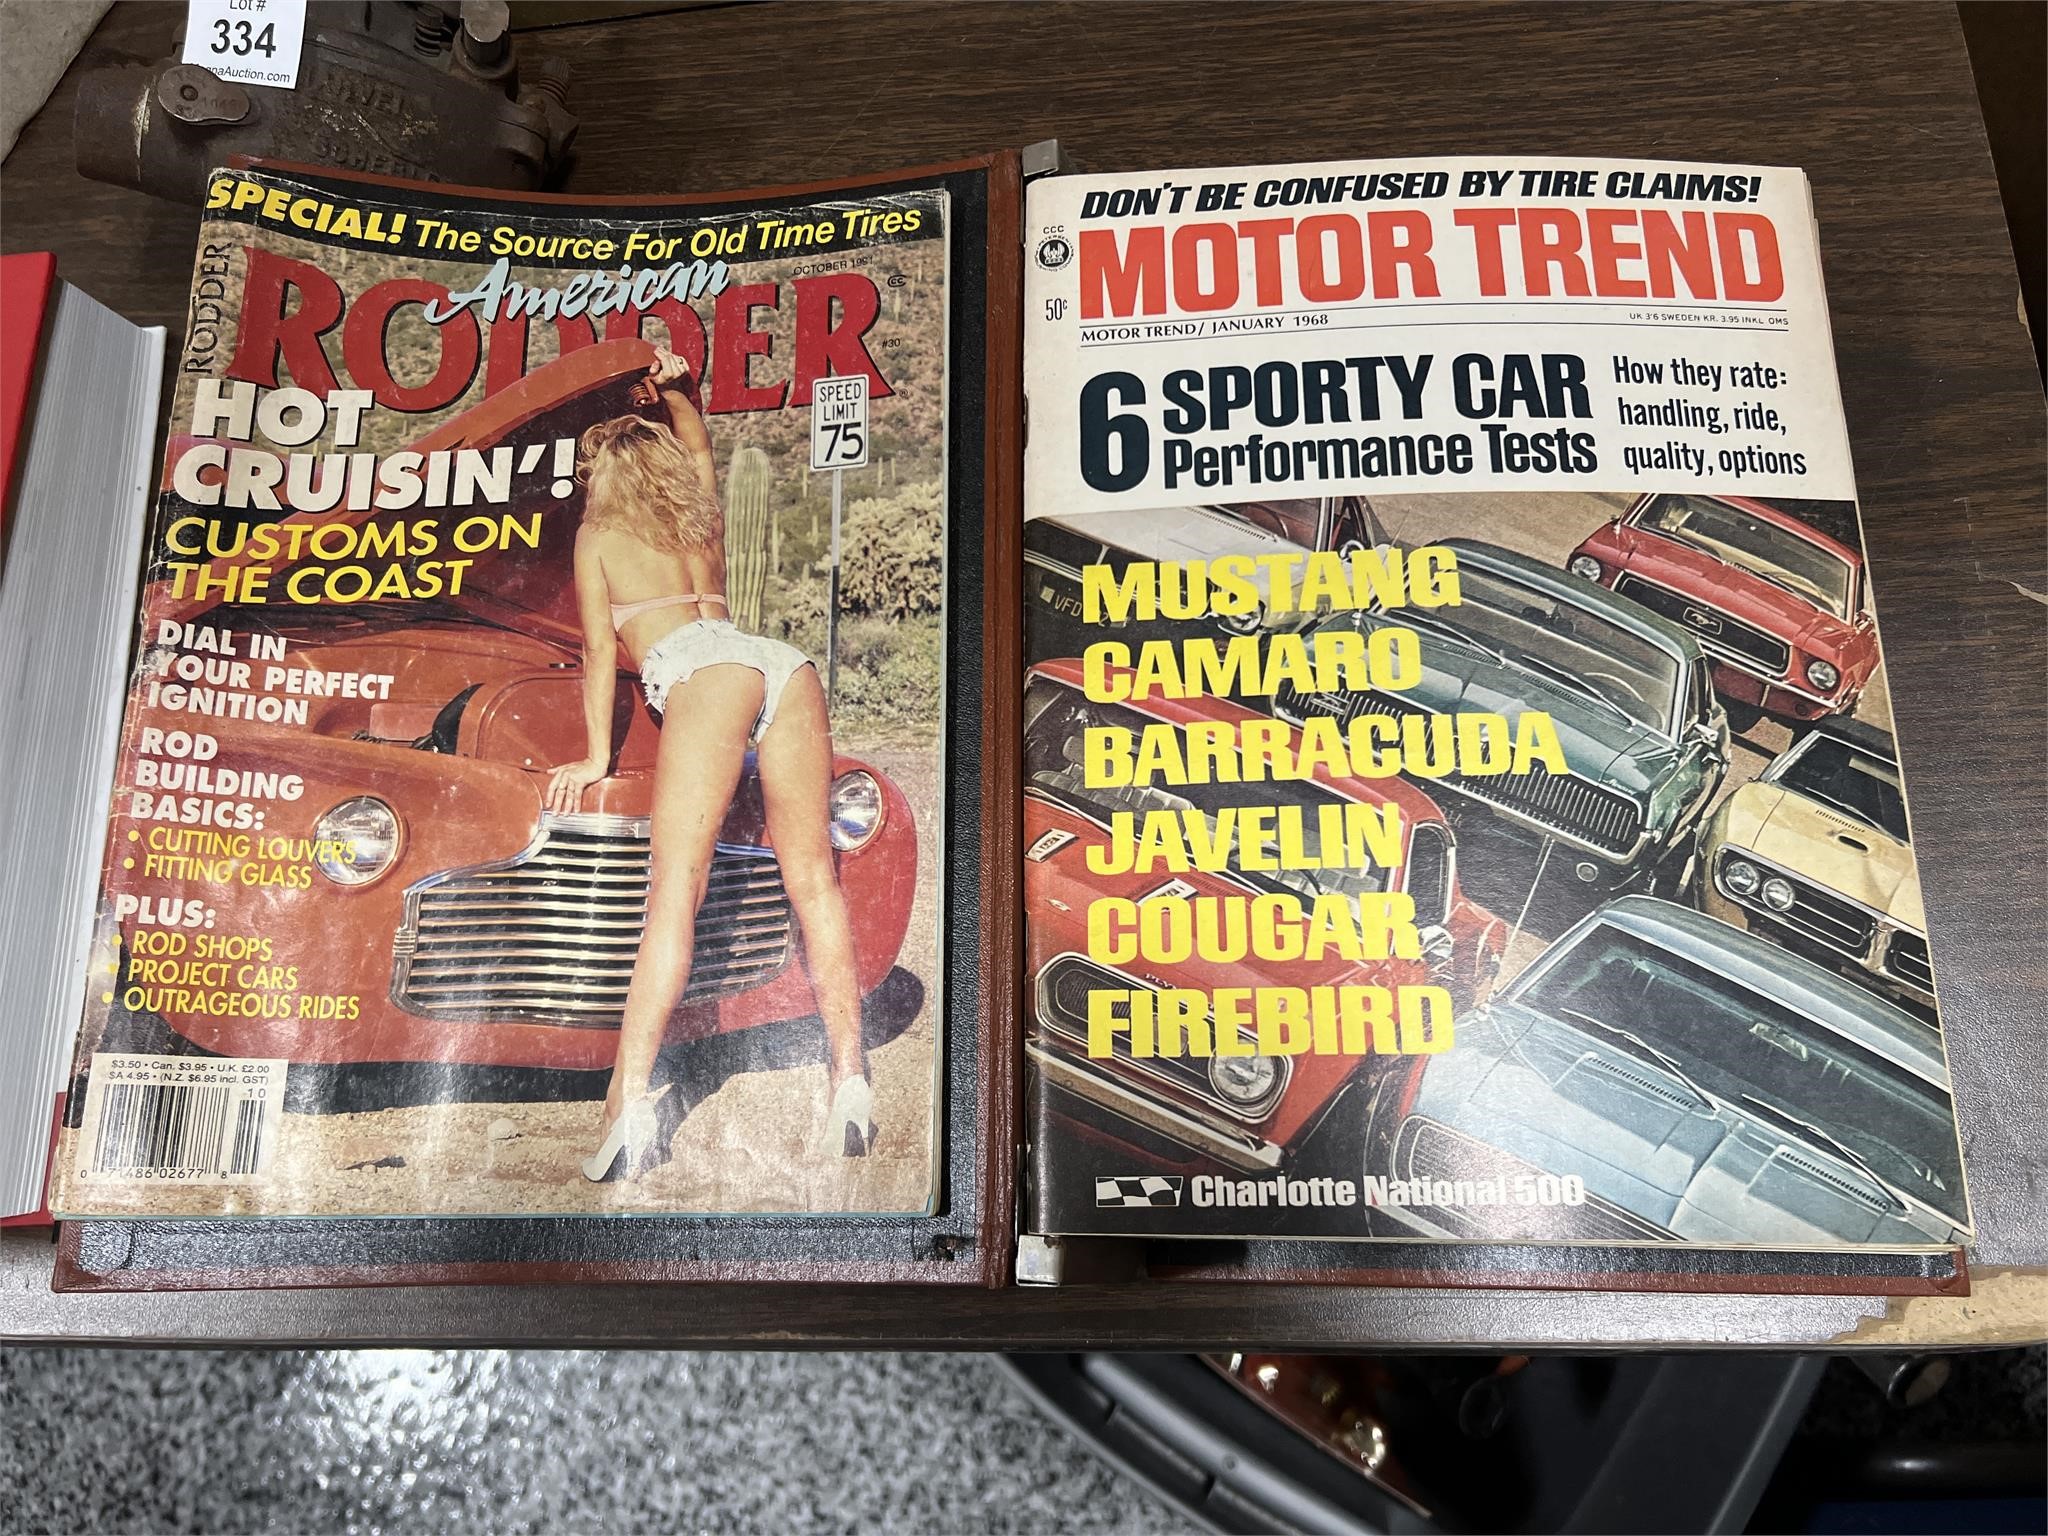 1968 Motor Trend Magazine - Full Year